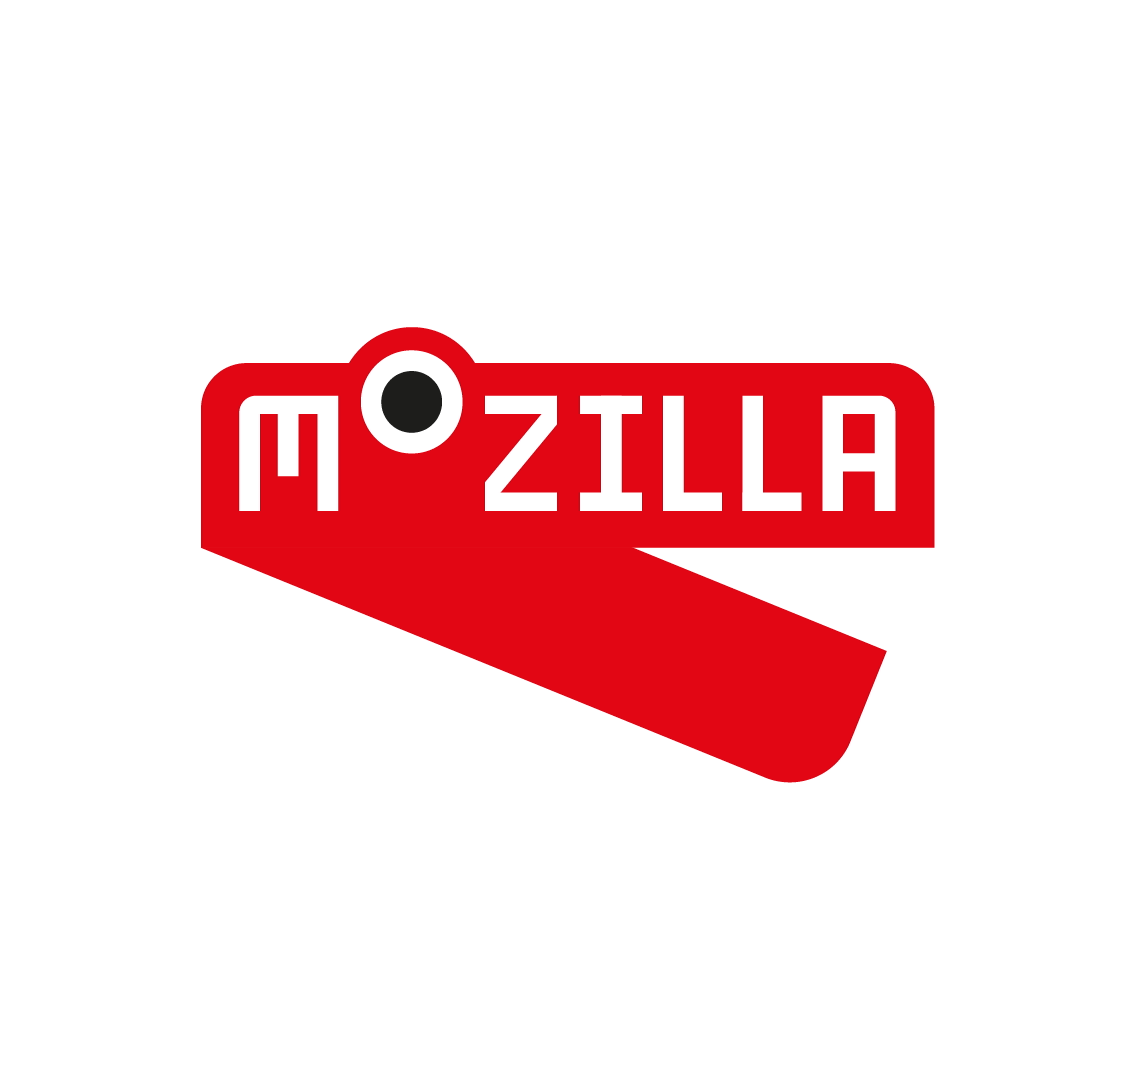 Mozilla Open Design